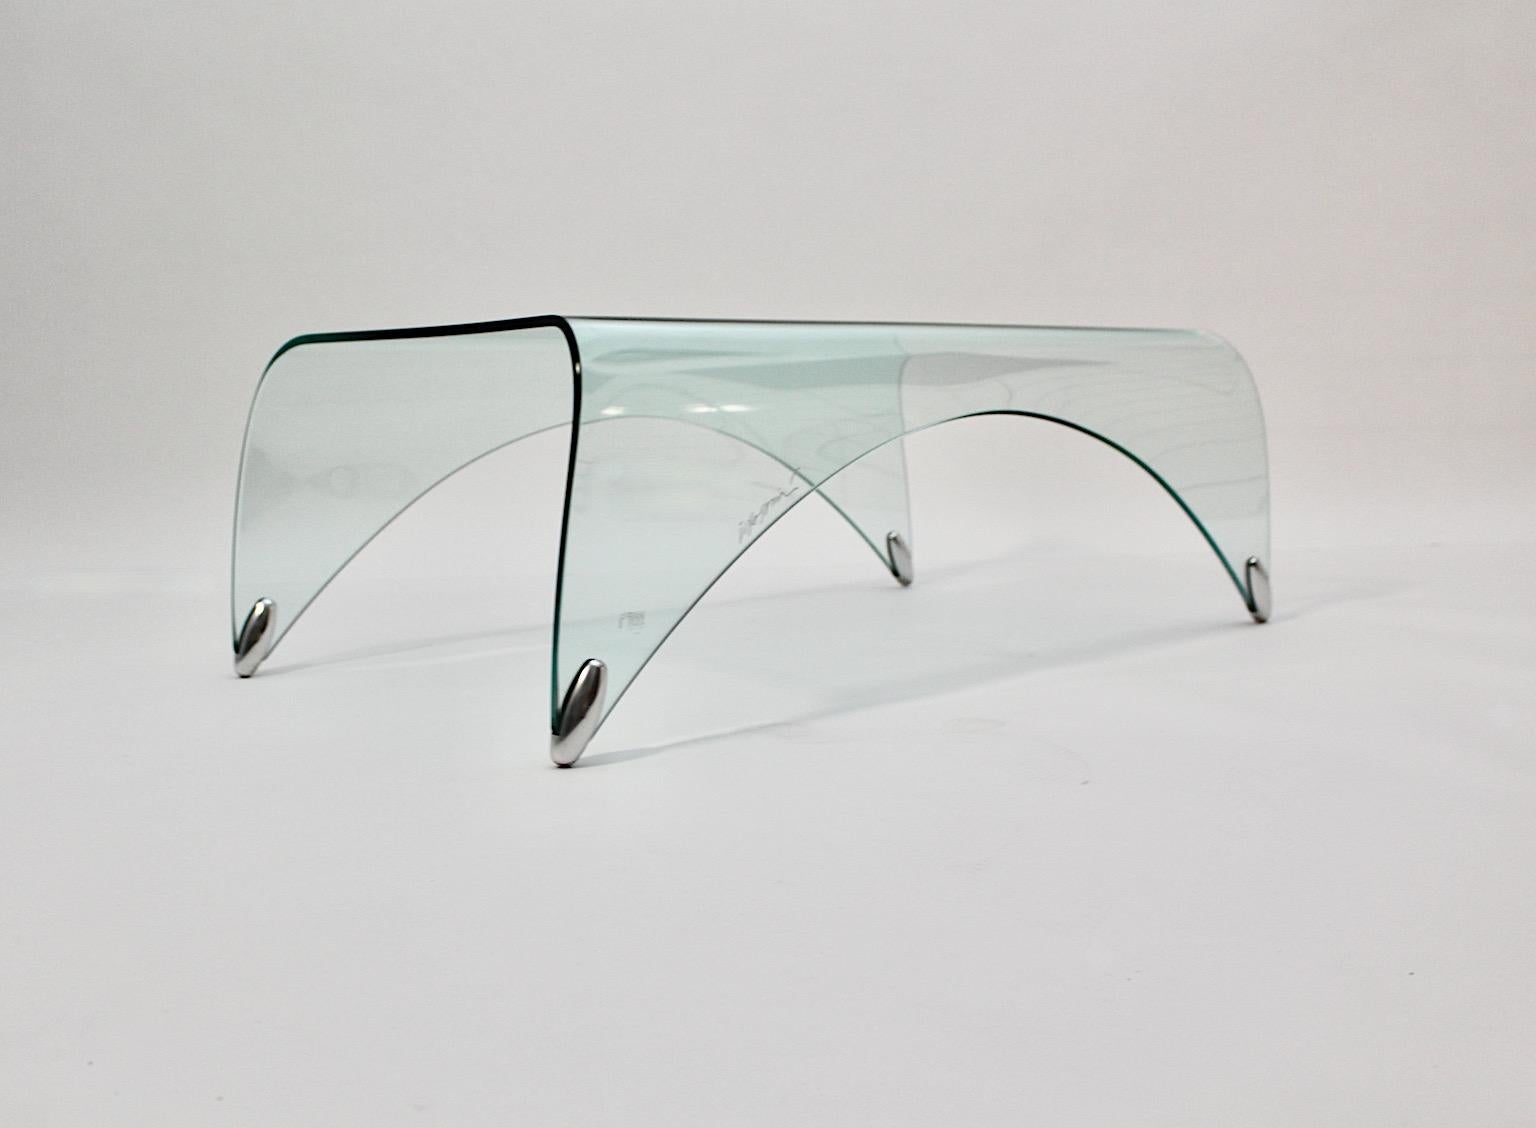 Table de canapé ou table d'appoint moderne en verre transparent vintage par Massimo Iosa Ghini pour FIAM, 20e siècle, Italie.
Table de canapé en verre transparent soutenue par des pieds en métal, en forme de cascade, conçue par Massimo Iosa Ghini